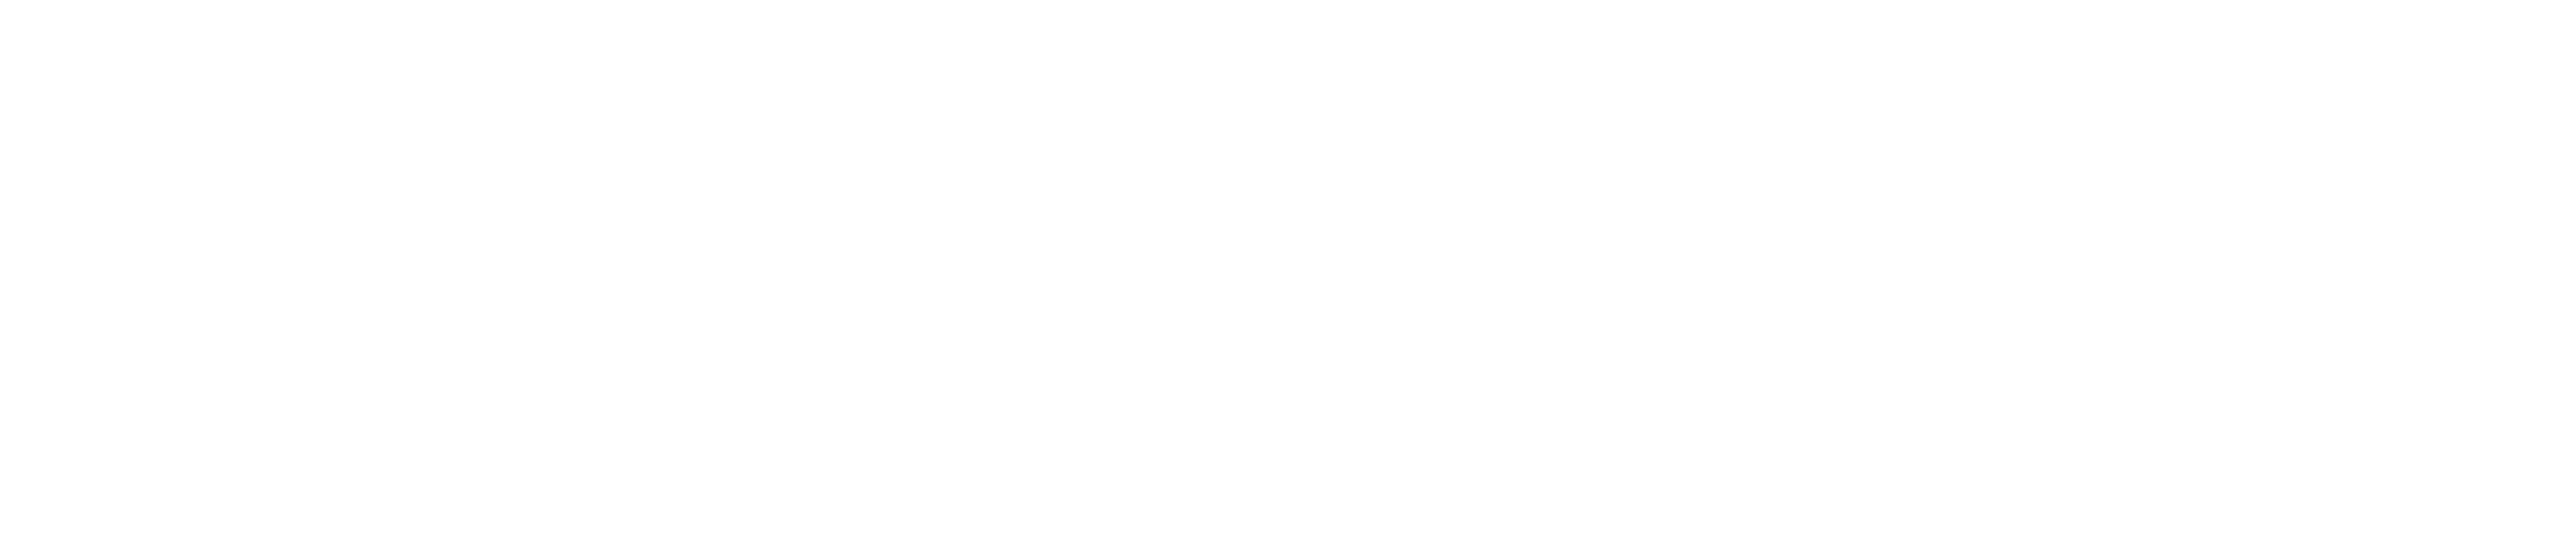 Snappycreators